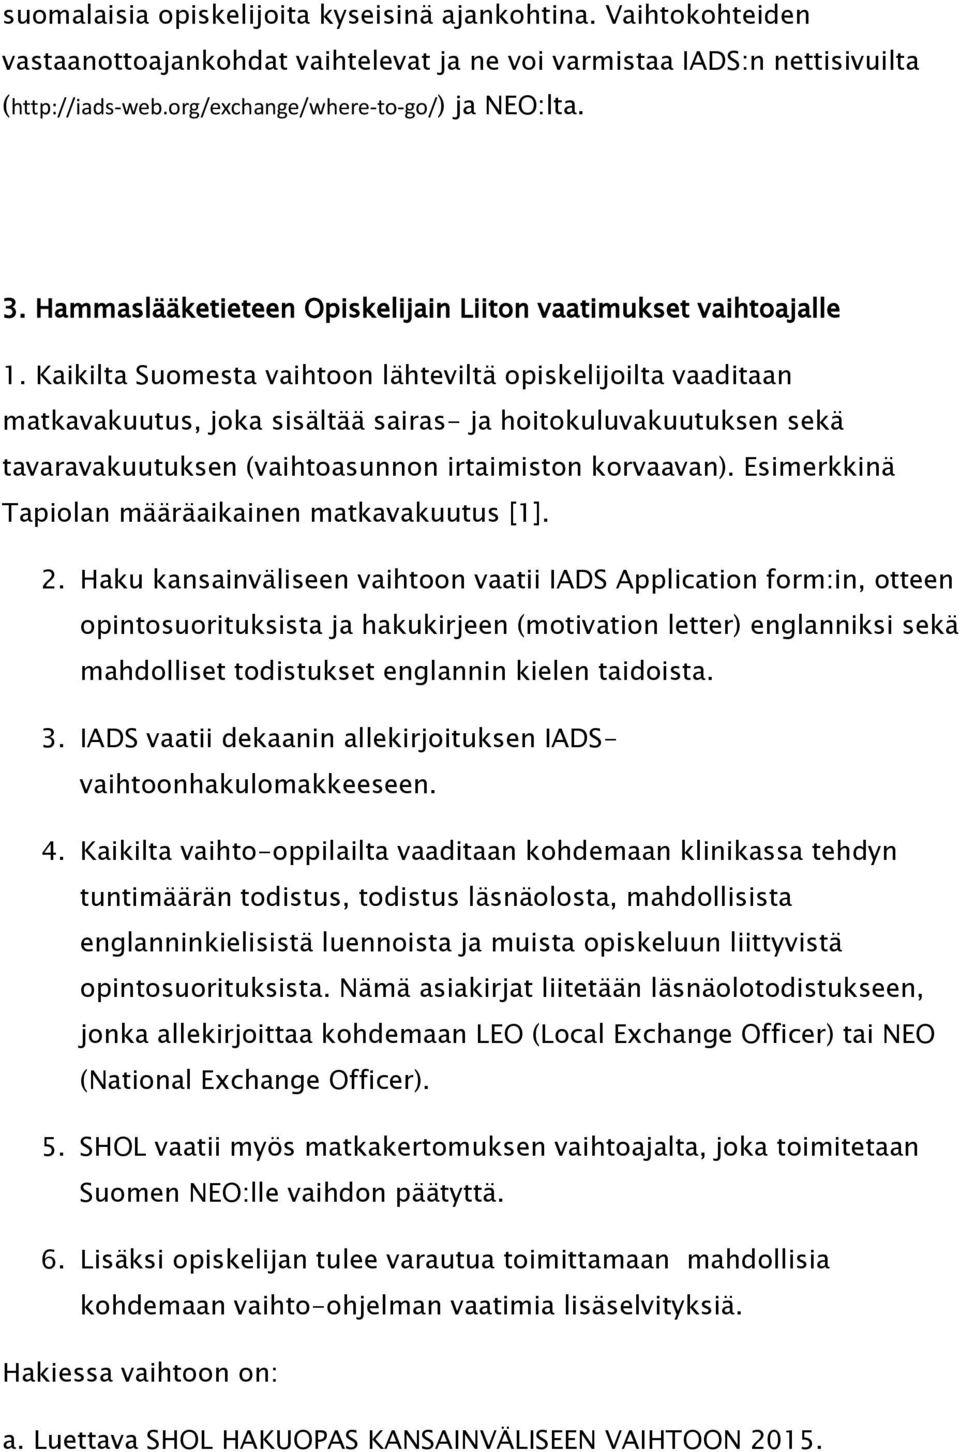 Kaikilta Suomesta vaihtoon lähteviltä opiskelijoilta vaaditaan matkavakuutus, joka sisältää sairas- ja hoitokuluvakuutuksen sekä tavaravakuutuksen (vaihtoasunnon irtaimiston korvaavan).